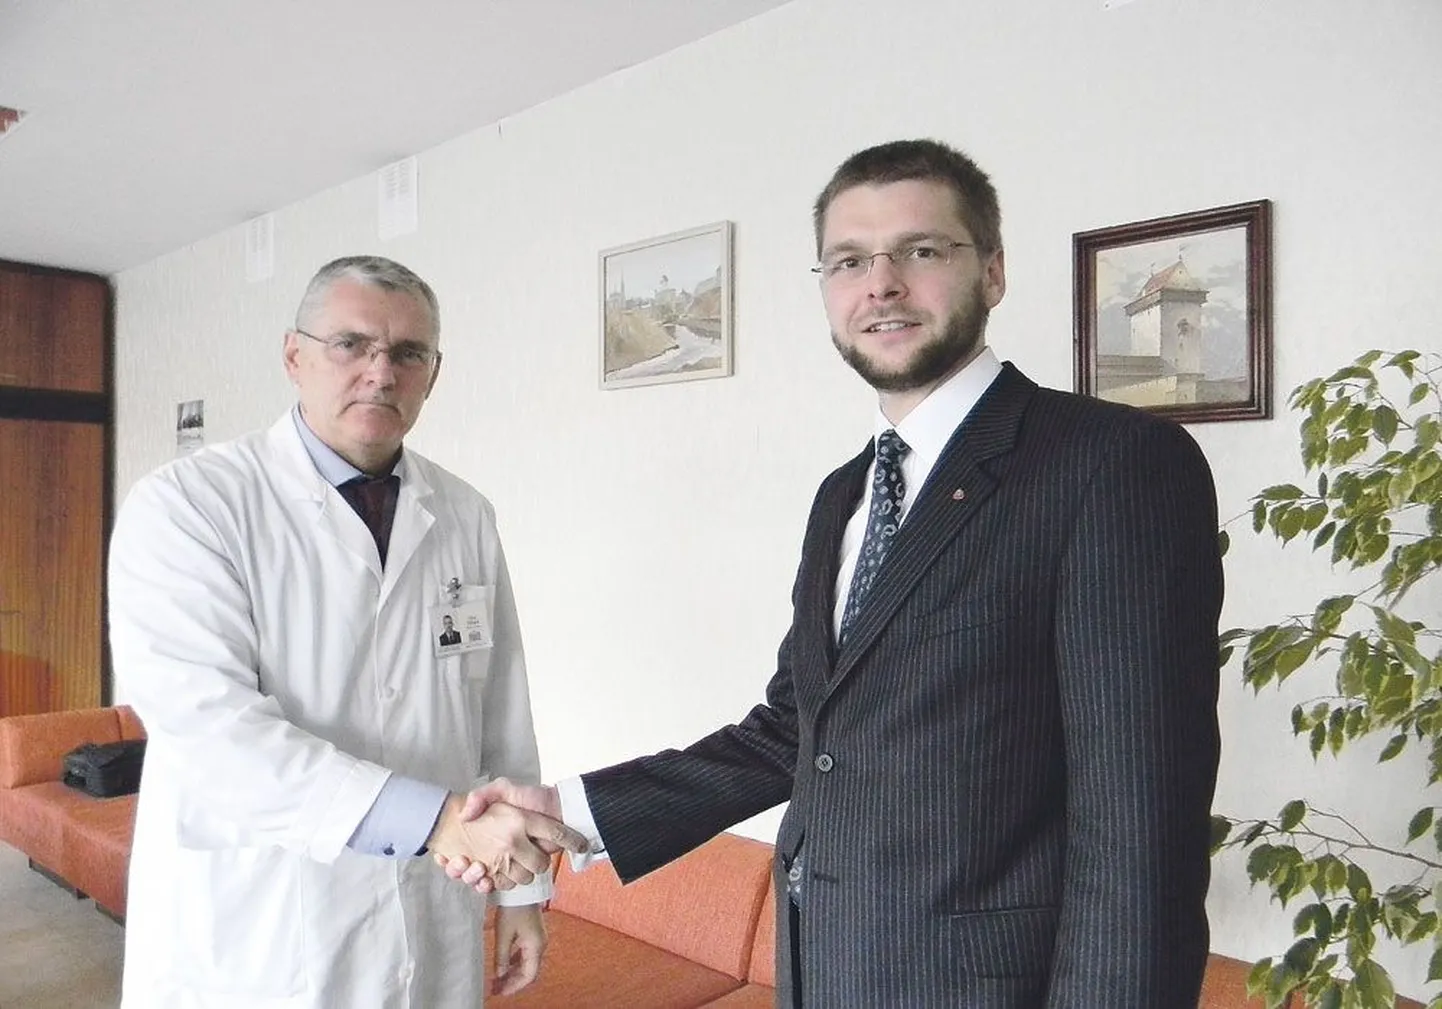 Евгений Осиновский на встрече с главным врачом Нарвской больницы Олевом Силландом.